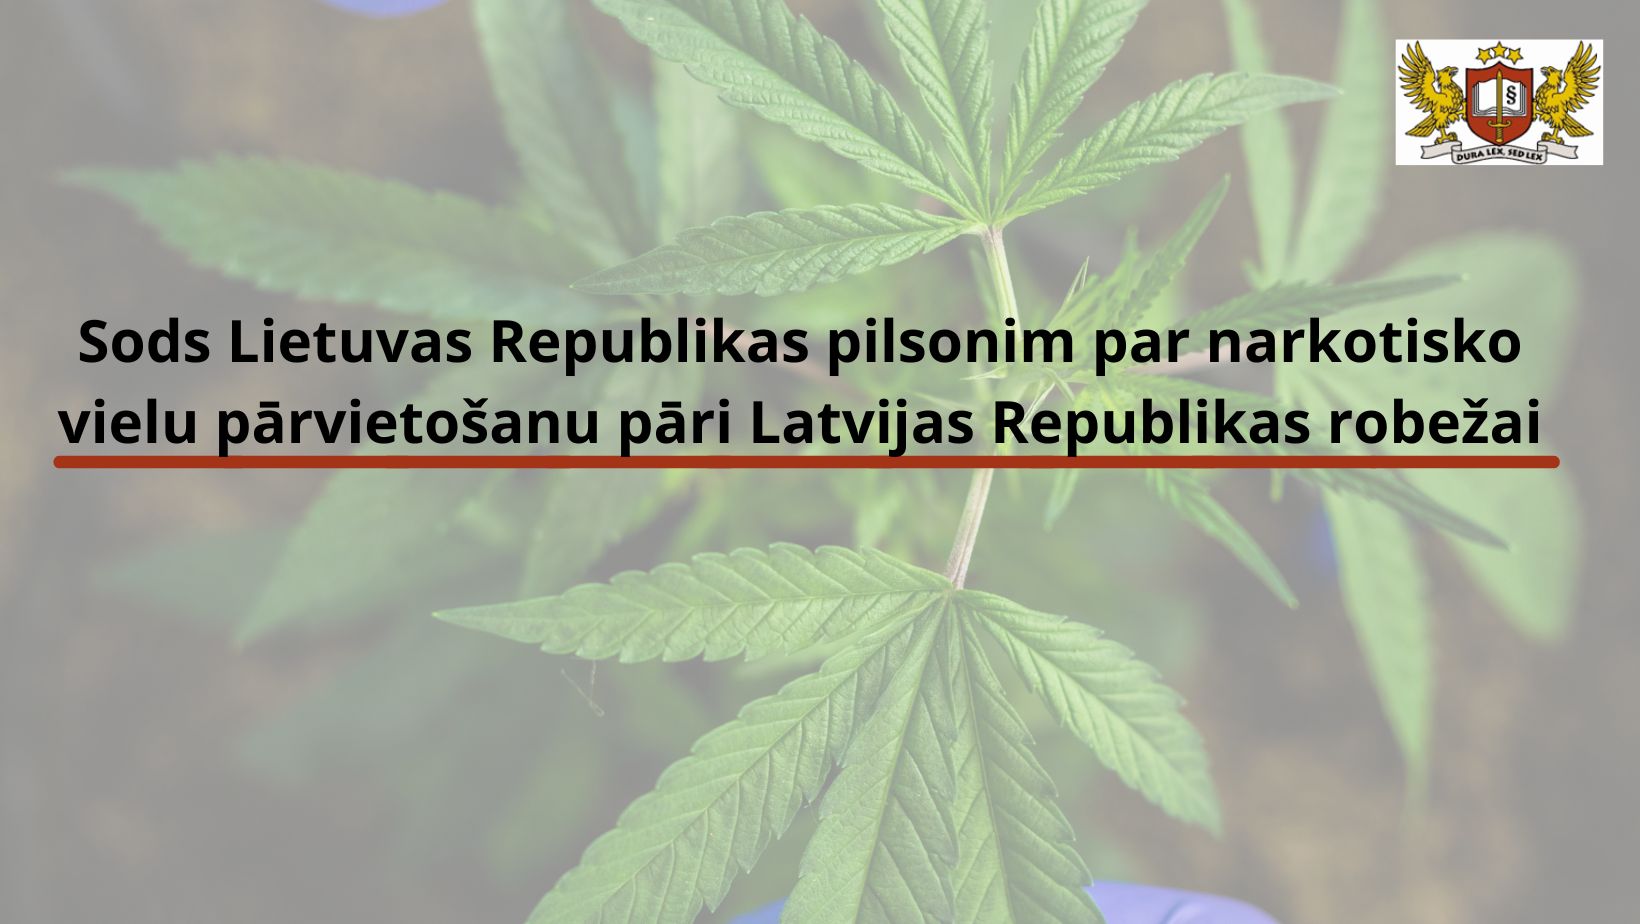 Attēls: Prokurore  ar priekšrakstu par sodu piemēro naudas sodu Lietuvas Republikas pilsonim par narkotisko vielu pārvietošanu pāri Latvijas Republikas robežai